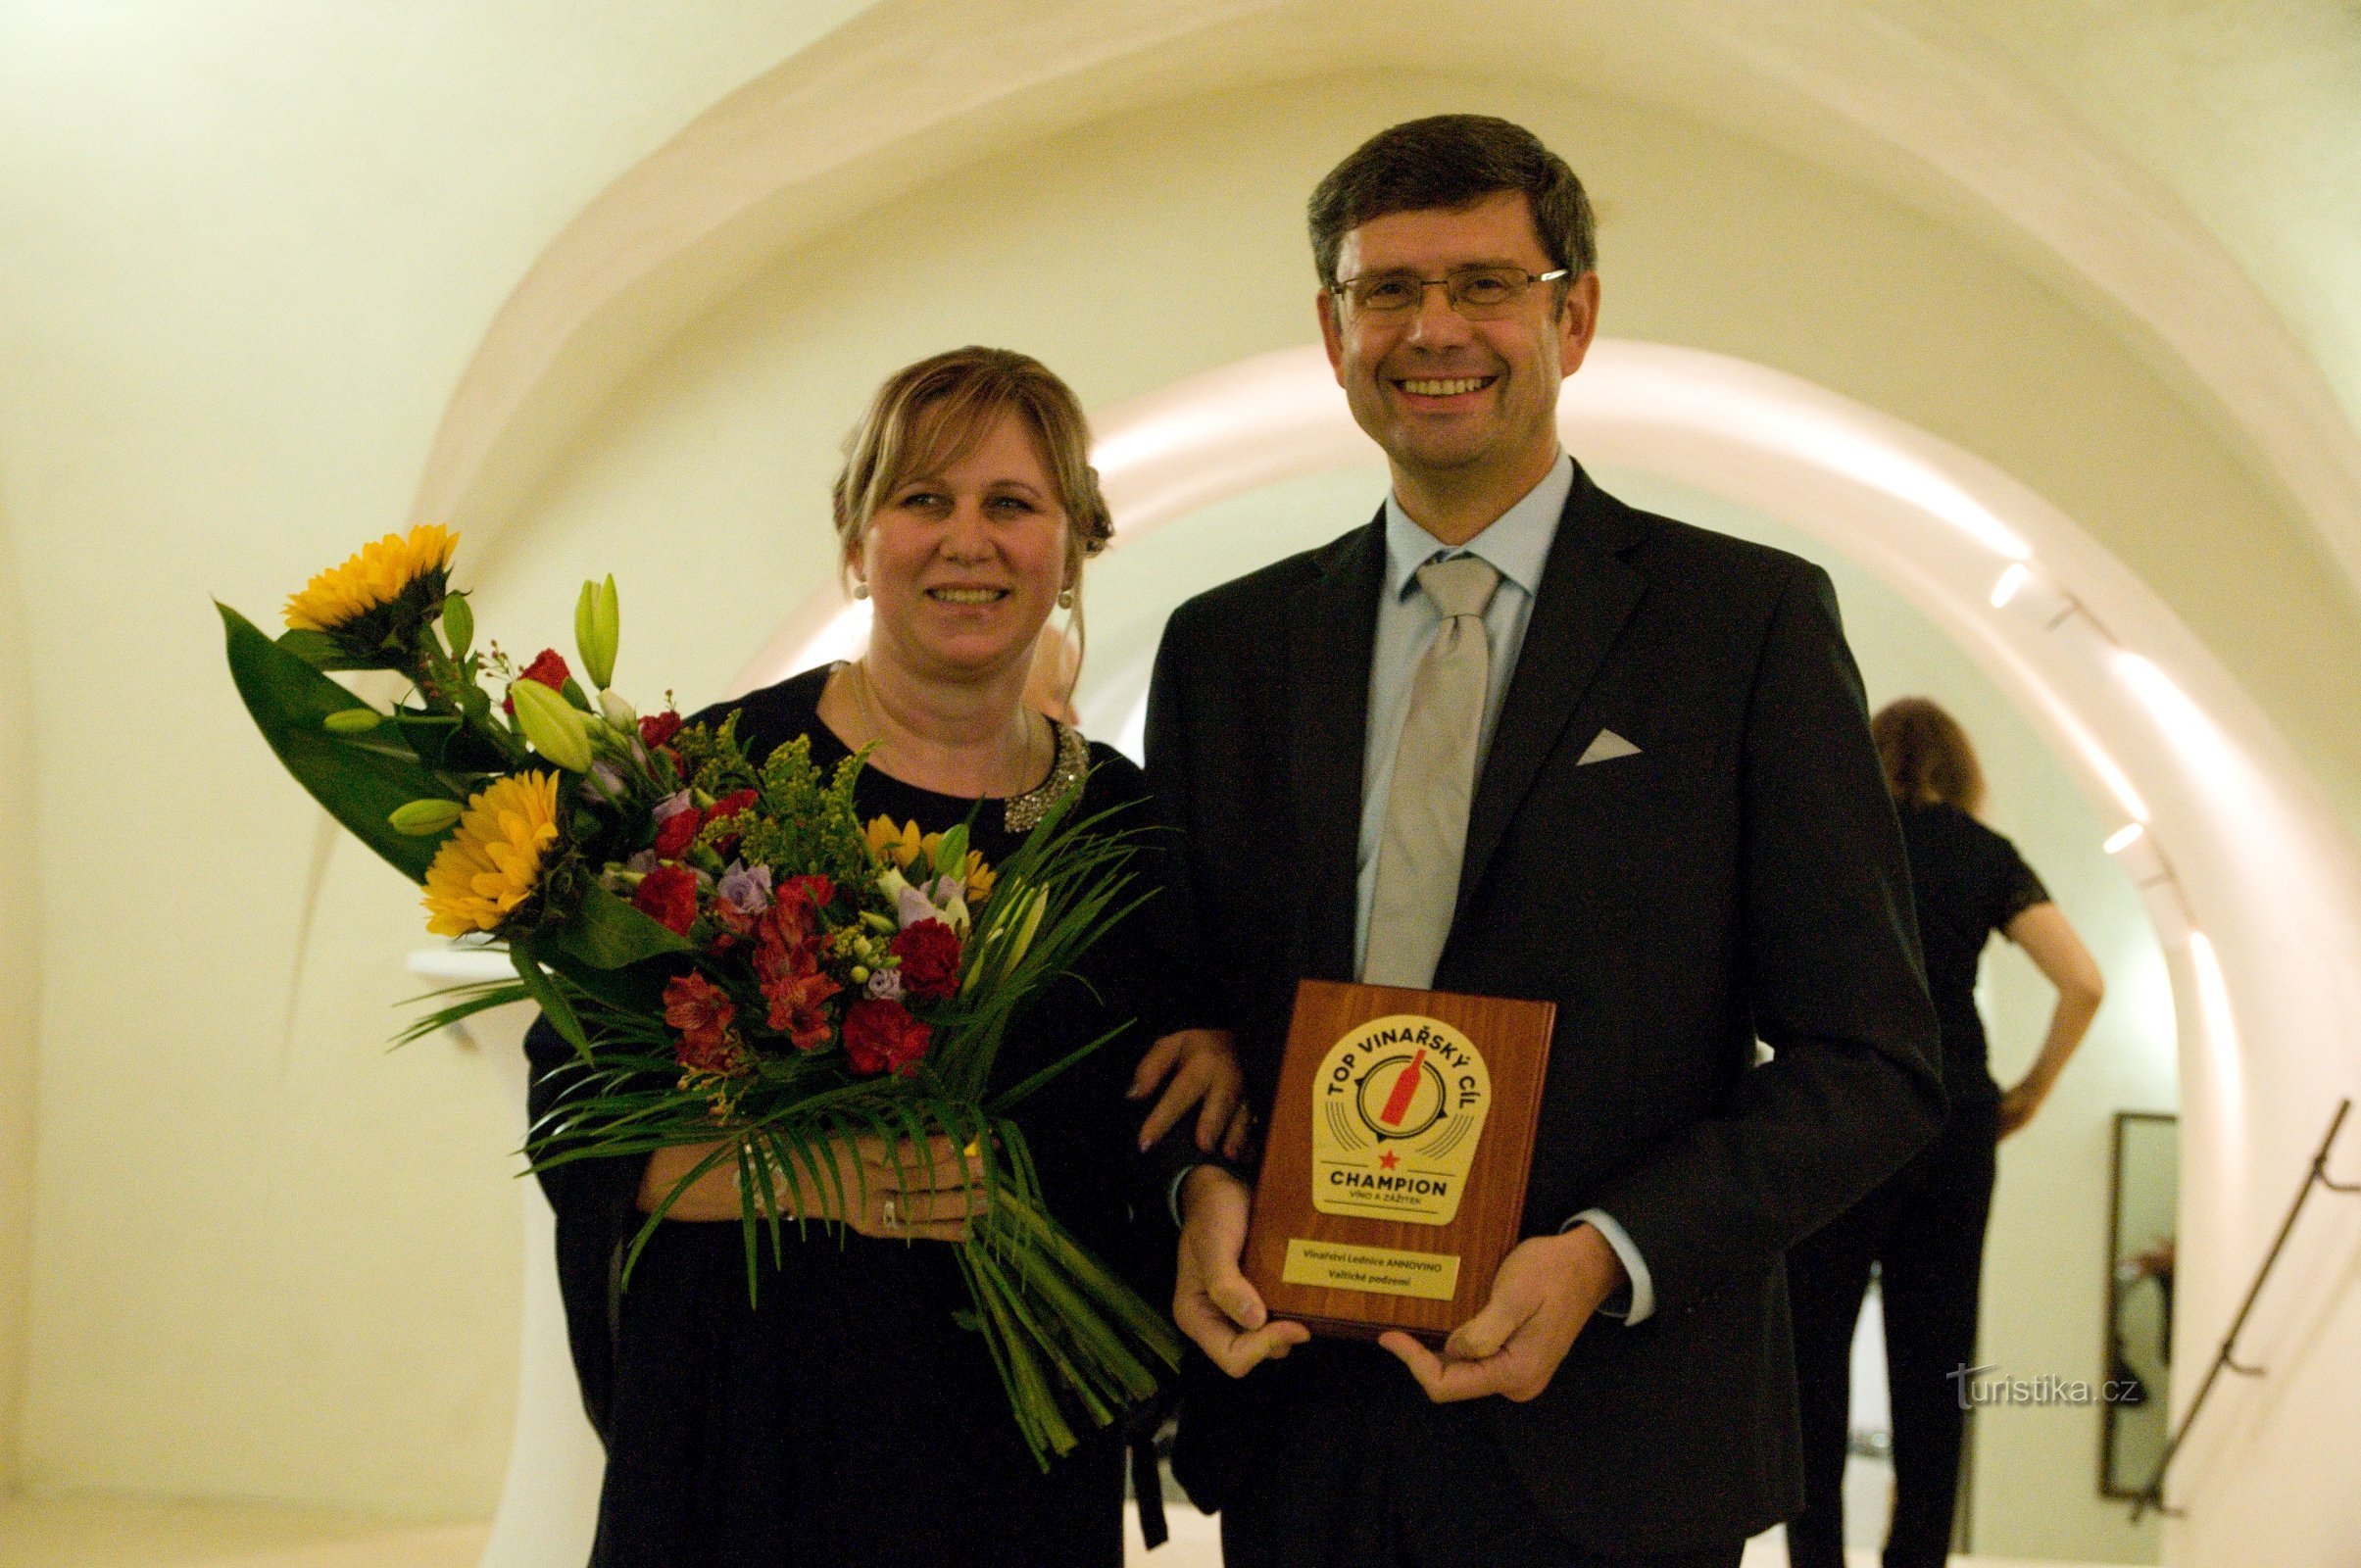 R: Žďárský remporte fièrement un précieux trophée - la plaque Top wine destination CHAMPION.